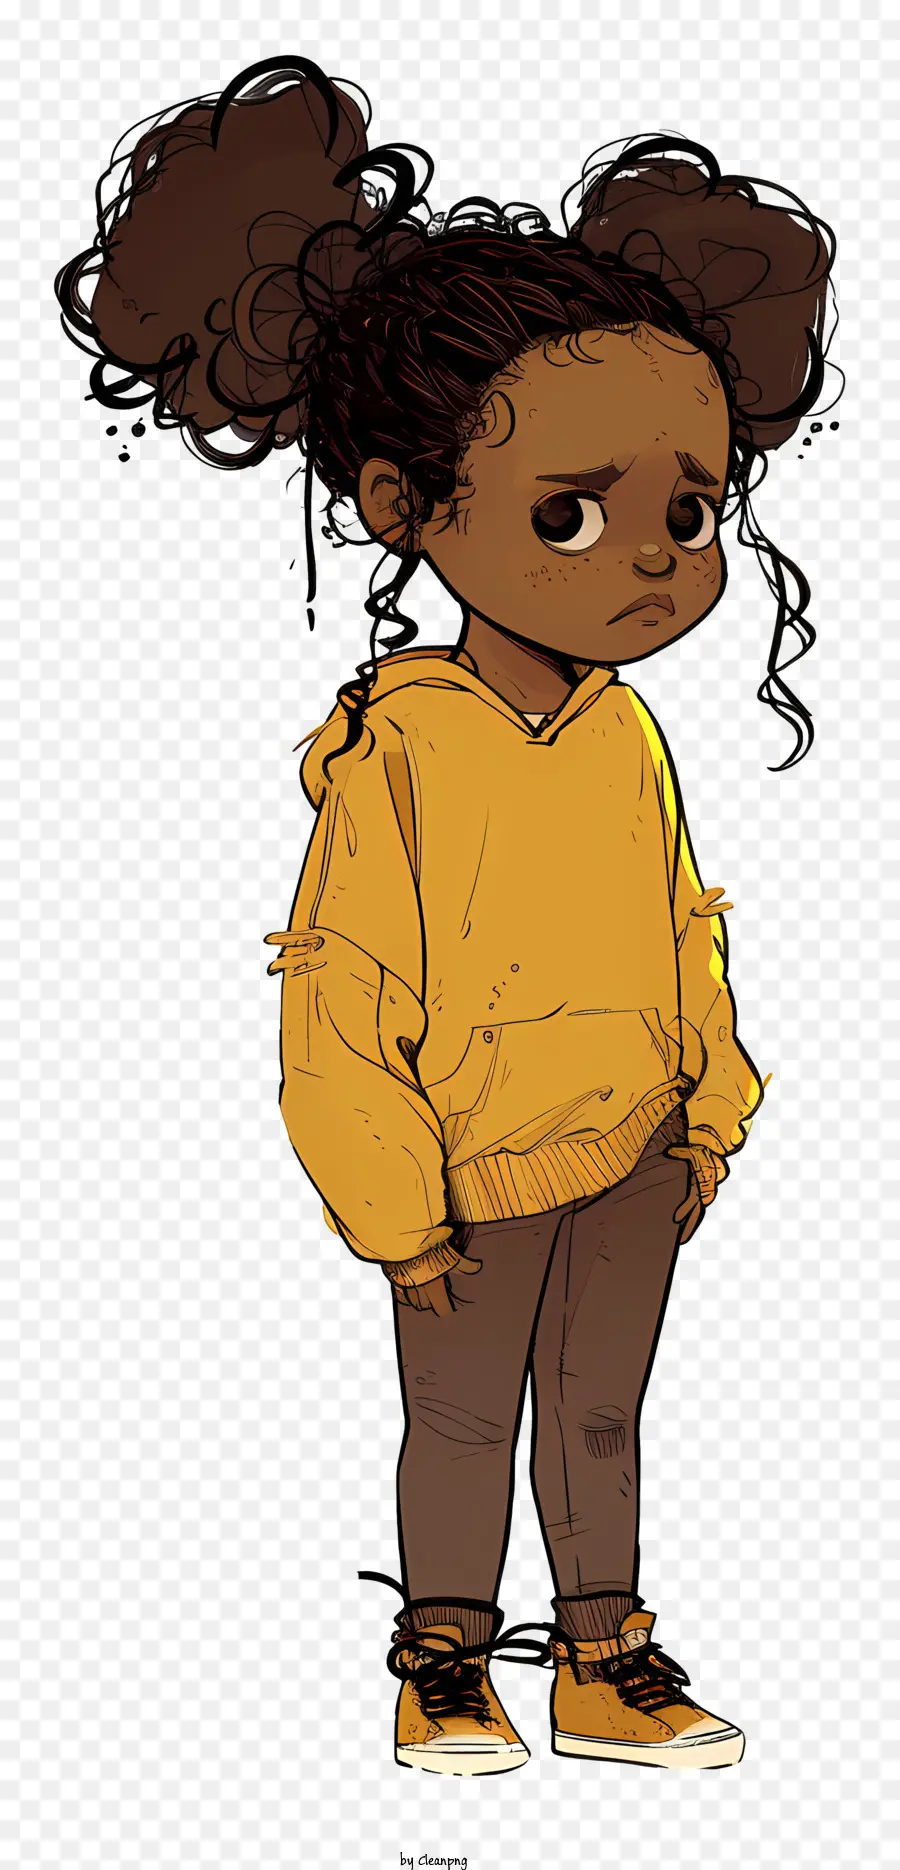 bambina - Giovane ragazza in felpa con cappuccio gialla, braccia incrociate